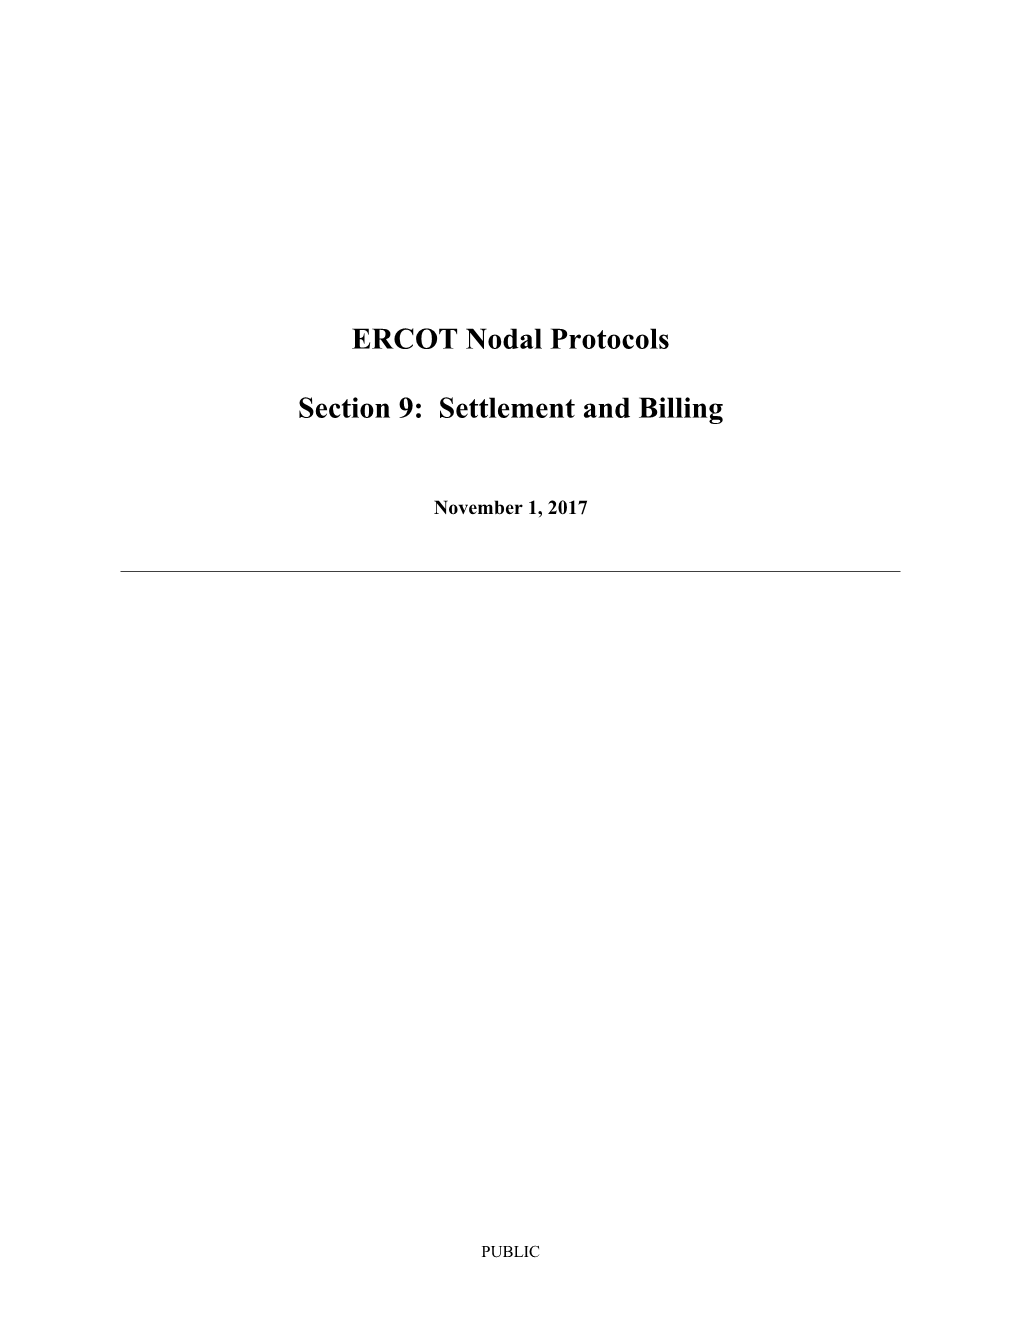 ERCOT Nodal Protocols s5